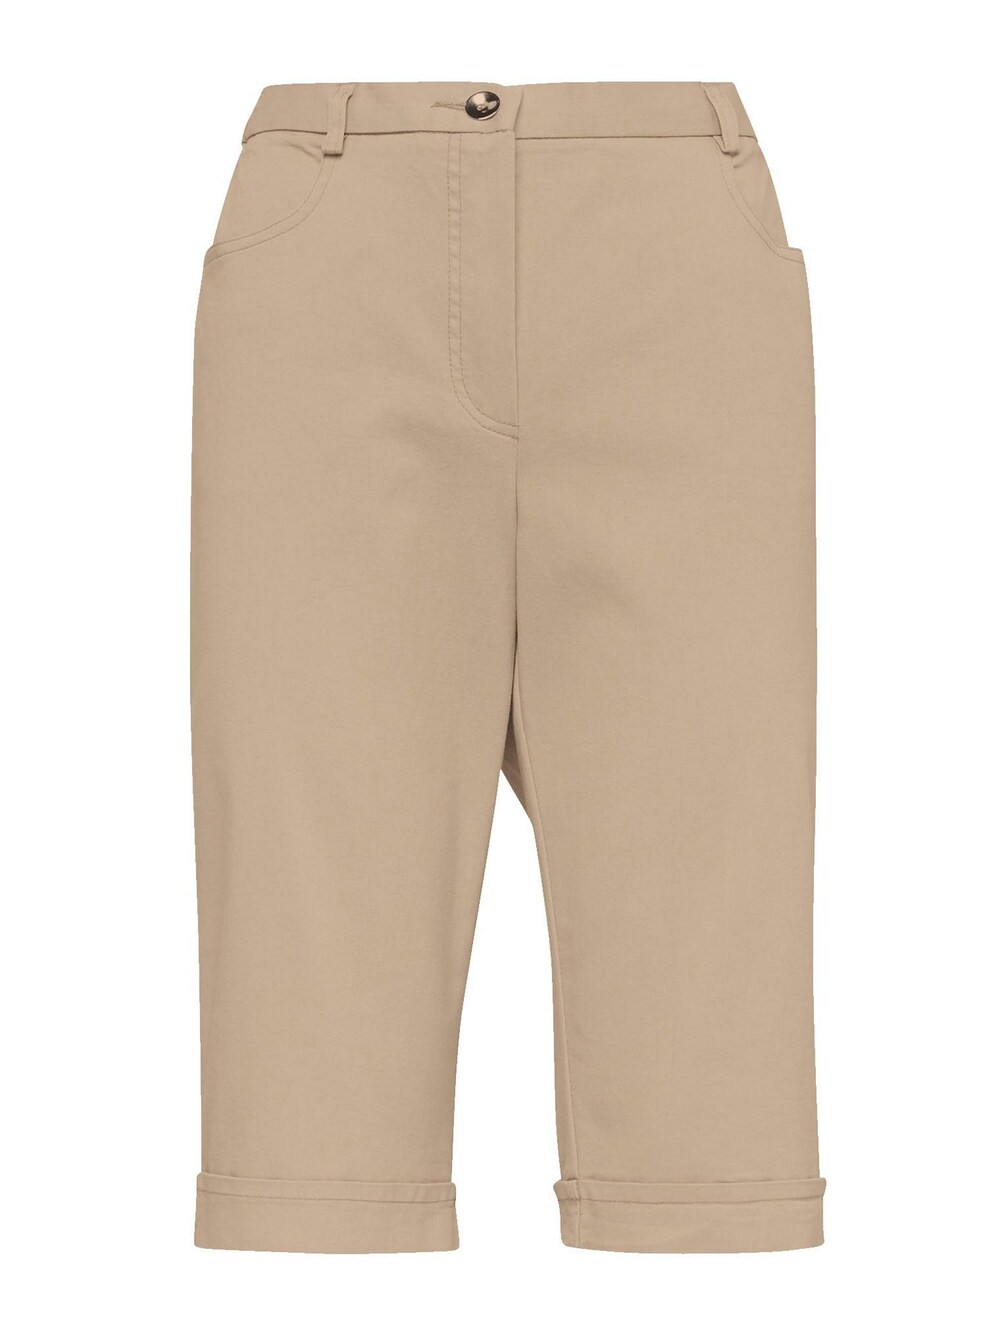 Обычные брюки Goldner CARLA, коричневый